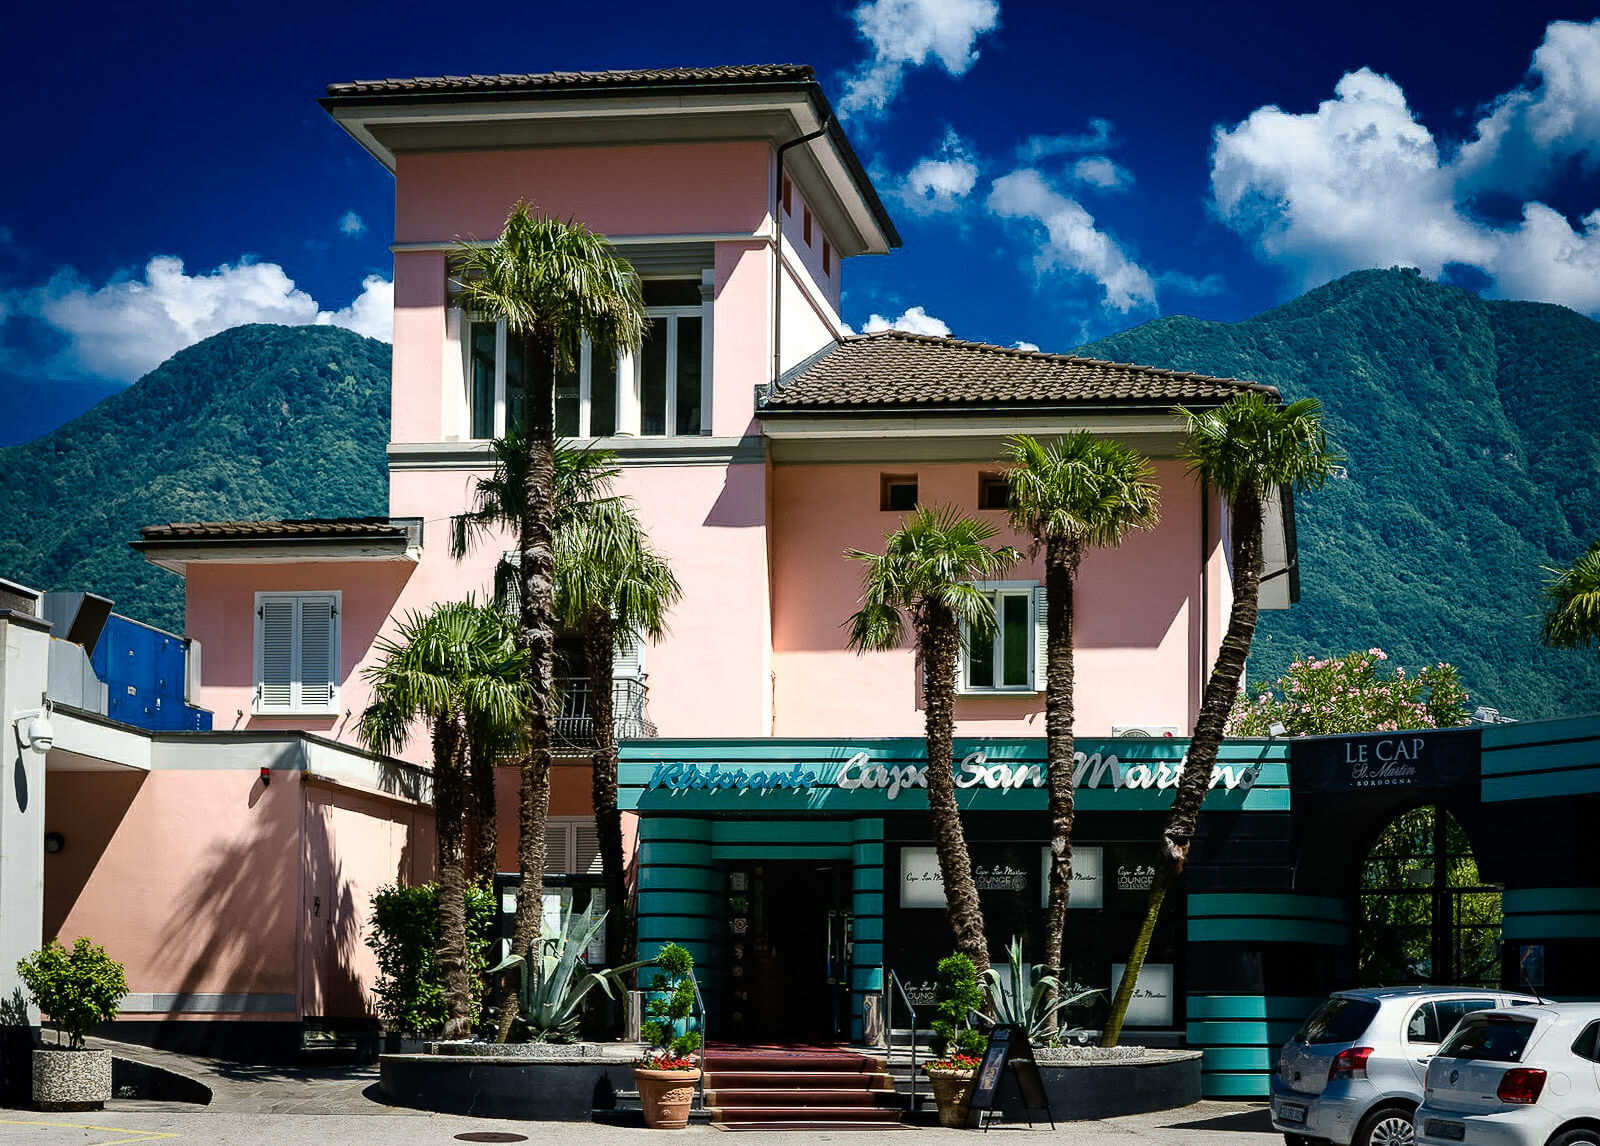 Reisetipps - Review - Urlaub in der Schweiz, in Melide, Lugano 38